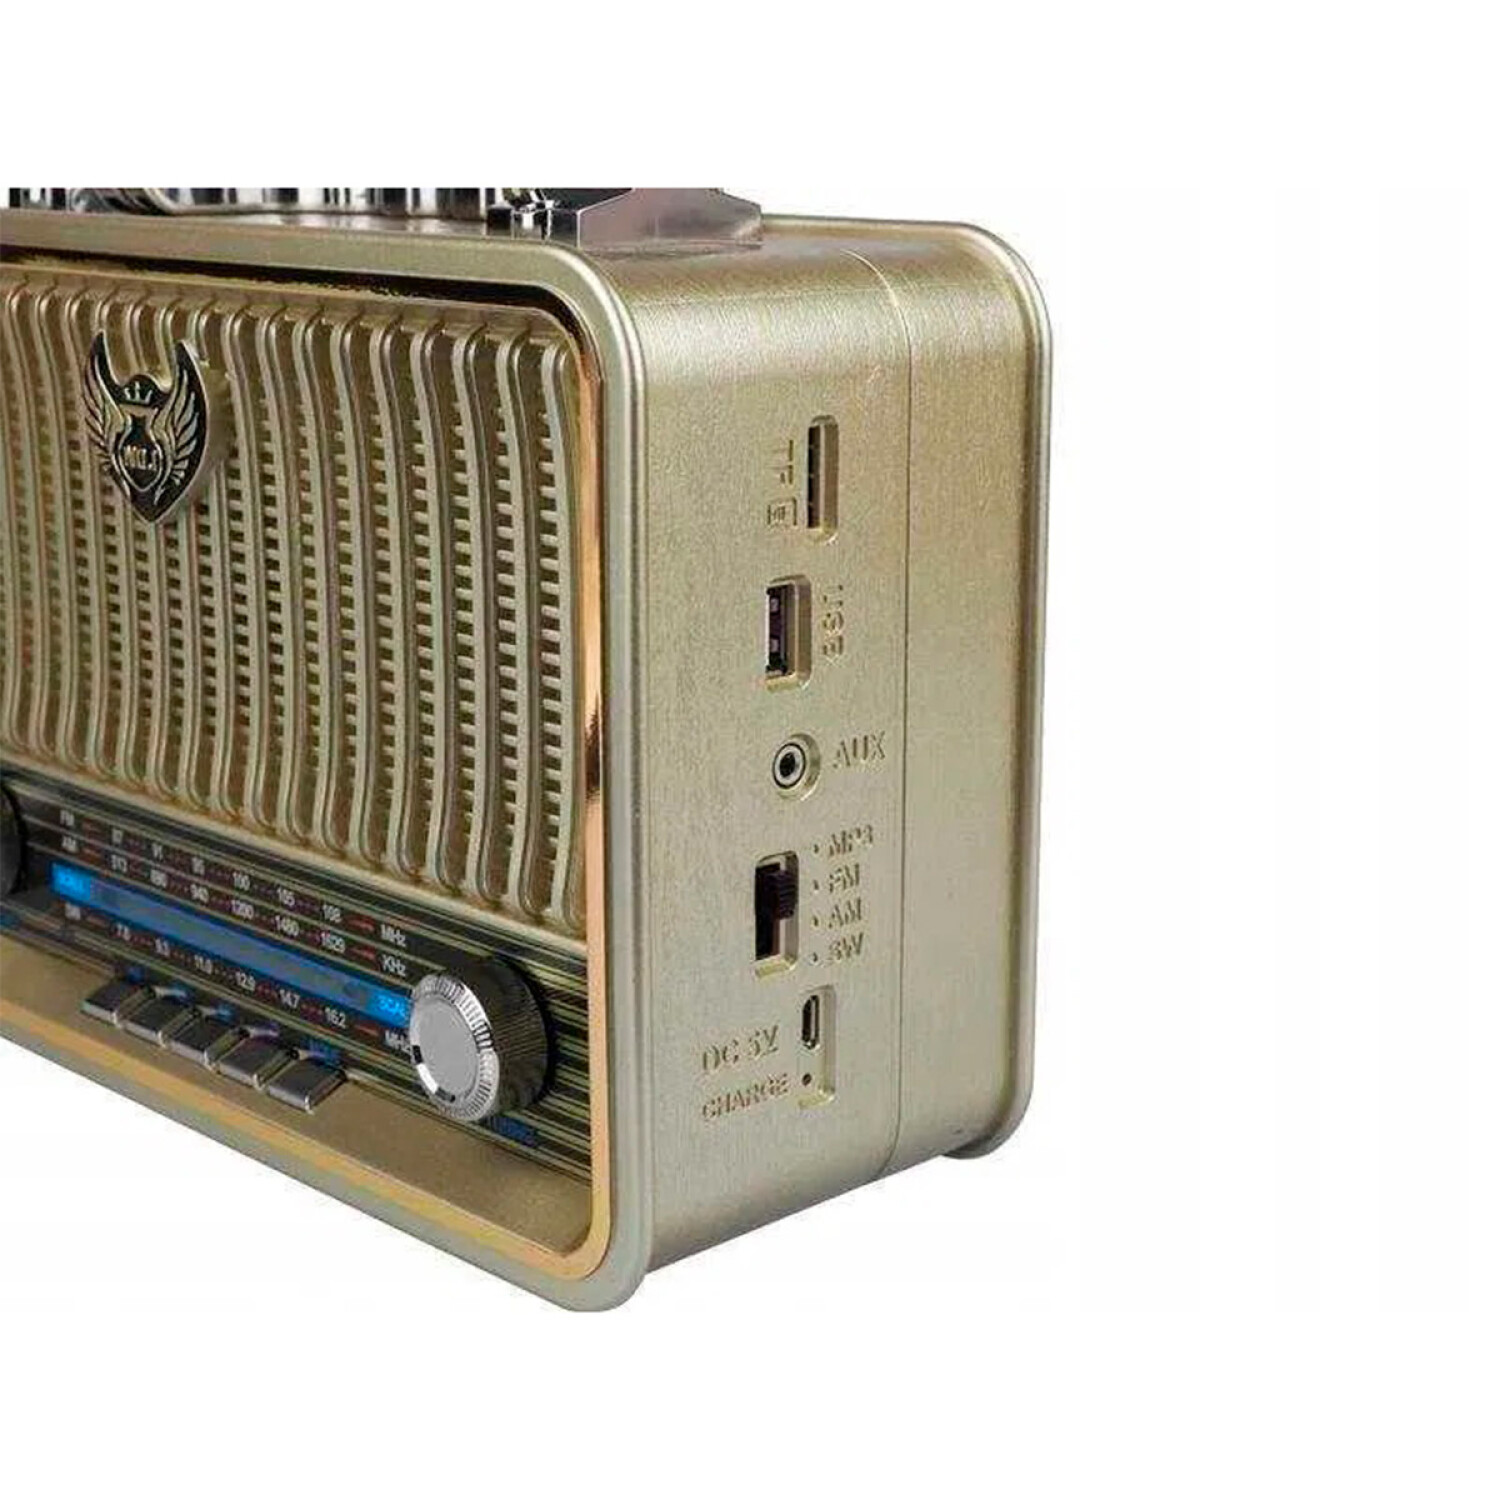 Radio Despertador Philips TAR3306 Digital - 001 — Universo Binario